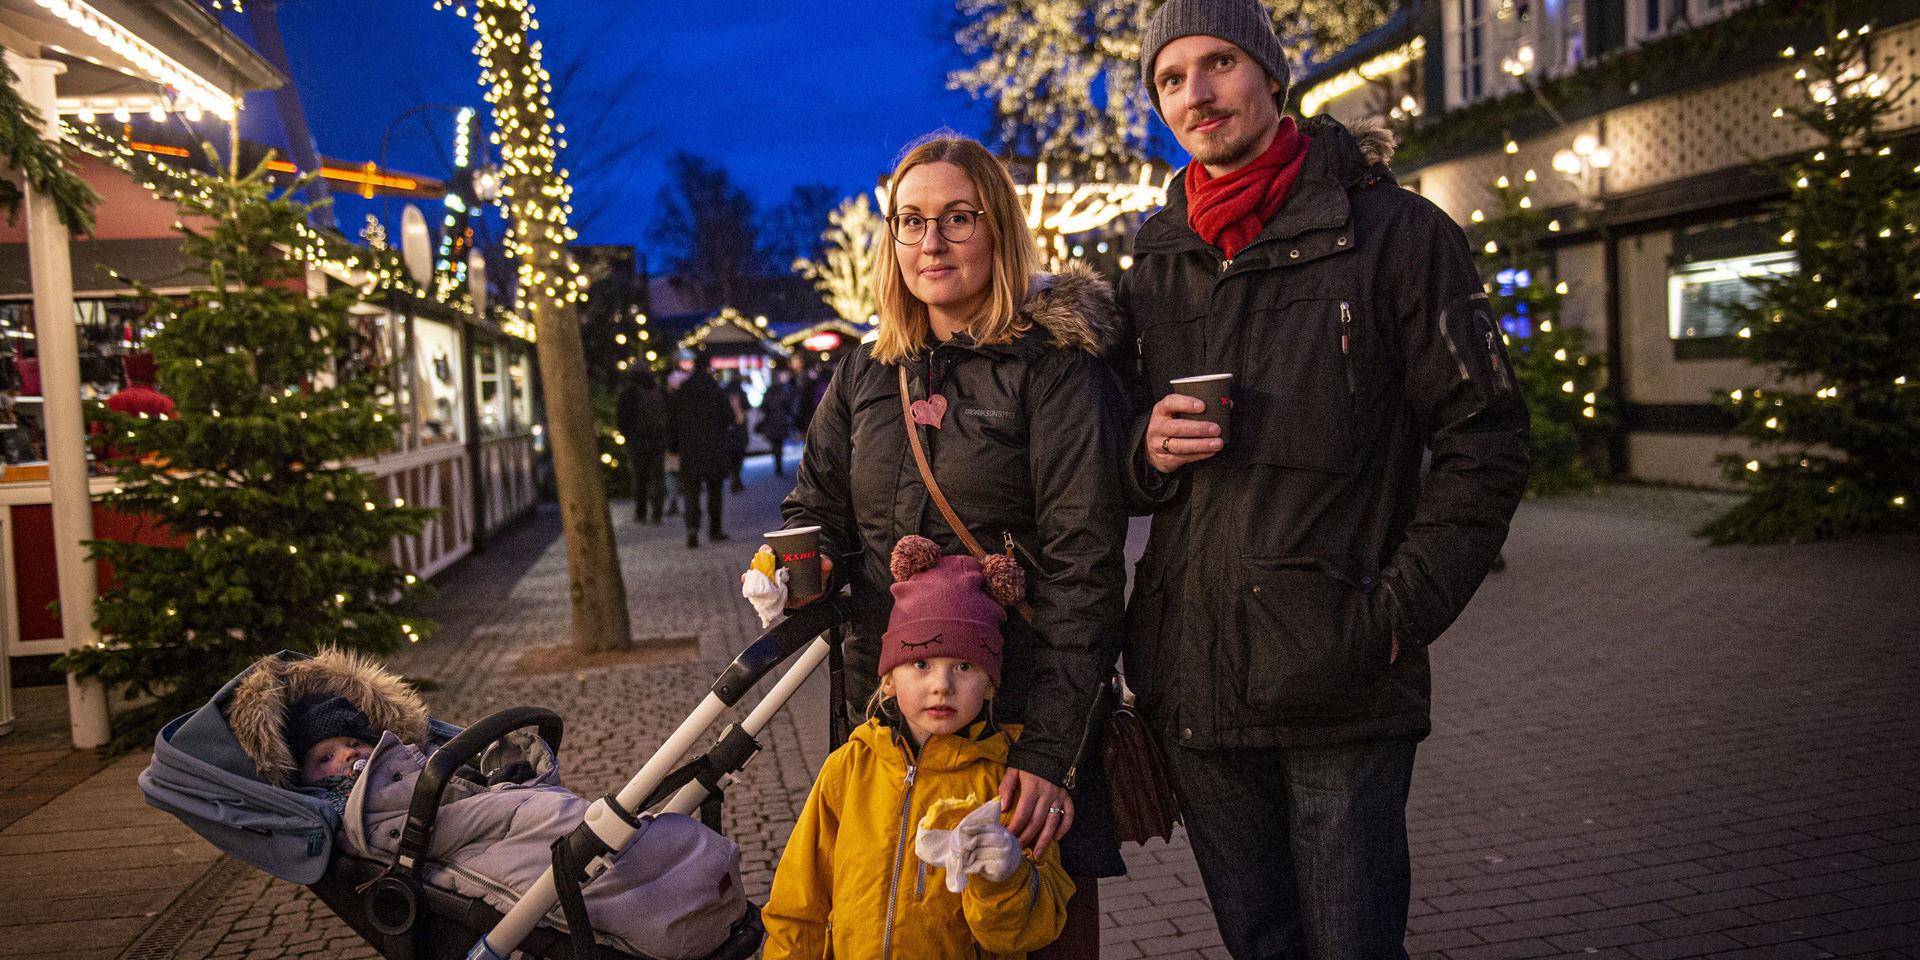 Familjen Brusing från Vänersborg var bland de första besökarna på Jul på Liseberg. Dottern Joline, i gul jacka, gillar visserligen lussebullar, men tycker att det allra bästa med julen är blommor.